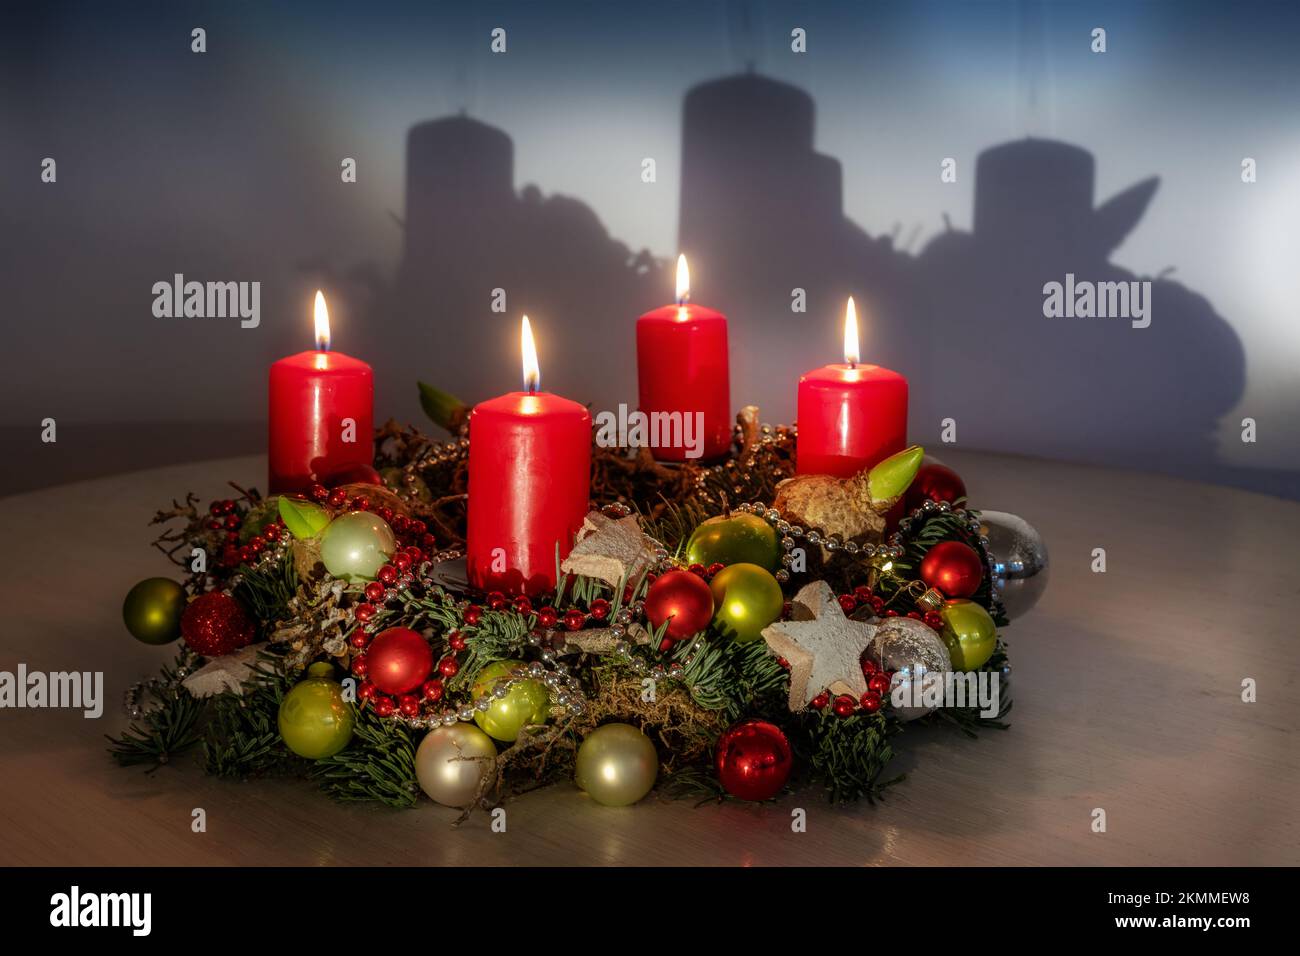 Corona dell'Avvento con palle di Natale rosse e verdi, quattro candele accese e un'ombra sul muro, spazio copia, fuoco selezionato, profondità di campo stretta Foto Stock